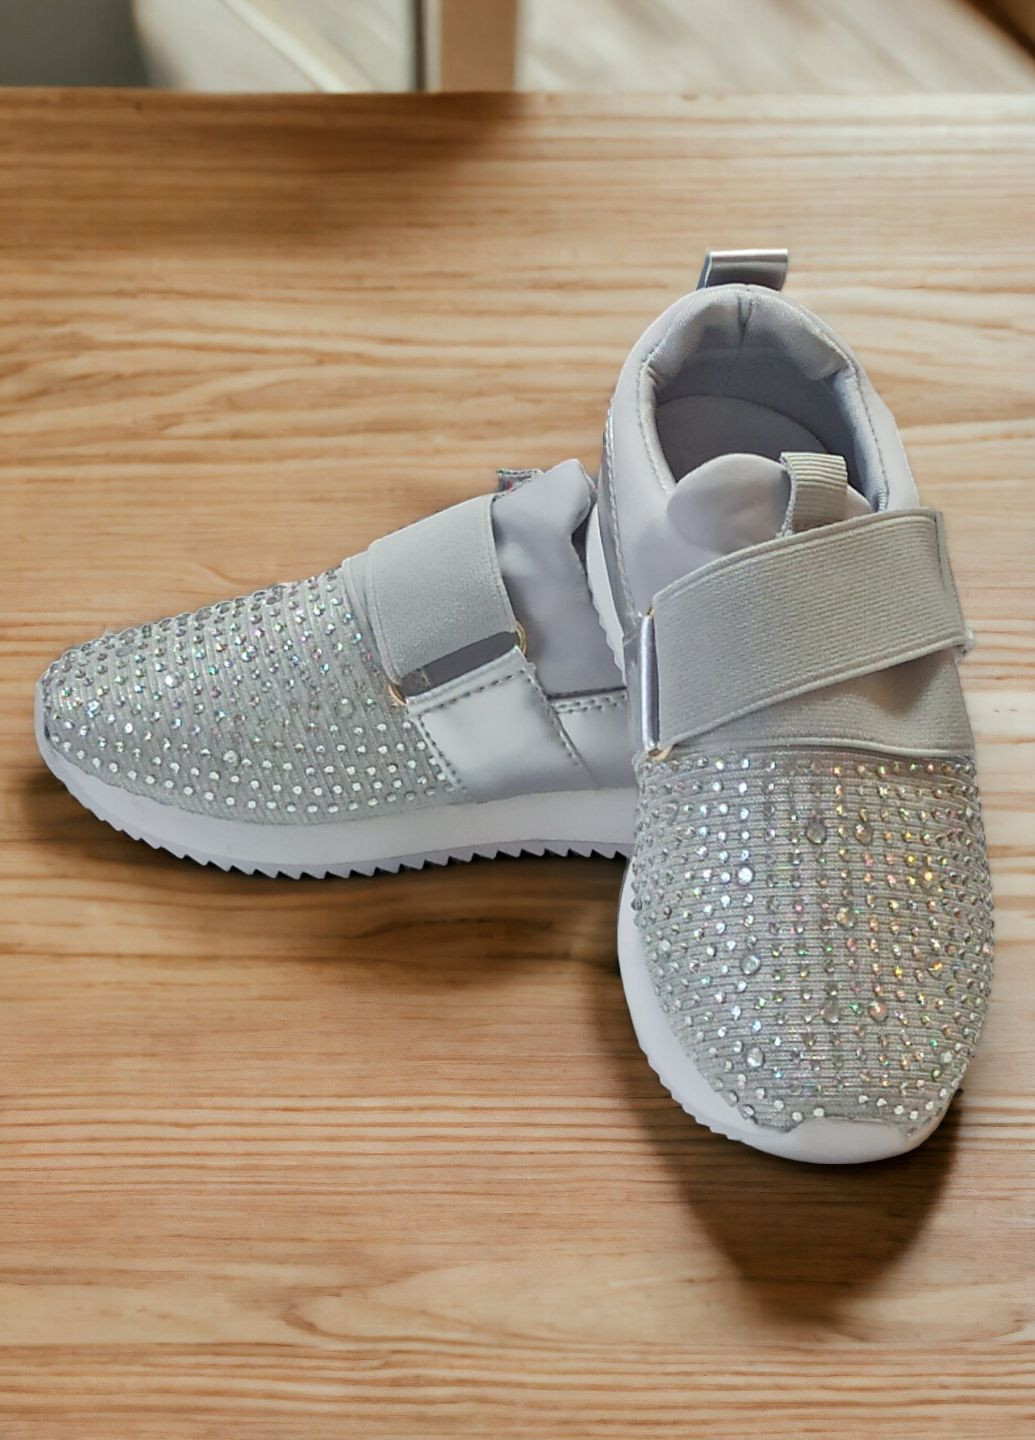 Срібні осінні кросівки дитячі для дівчинки mery inmery 3003 срібні LD